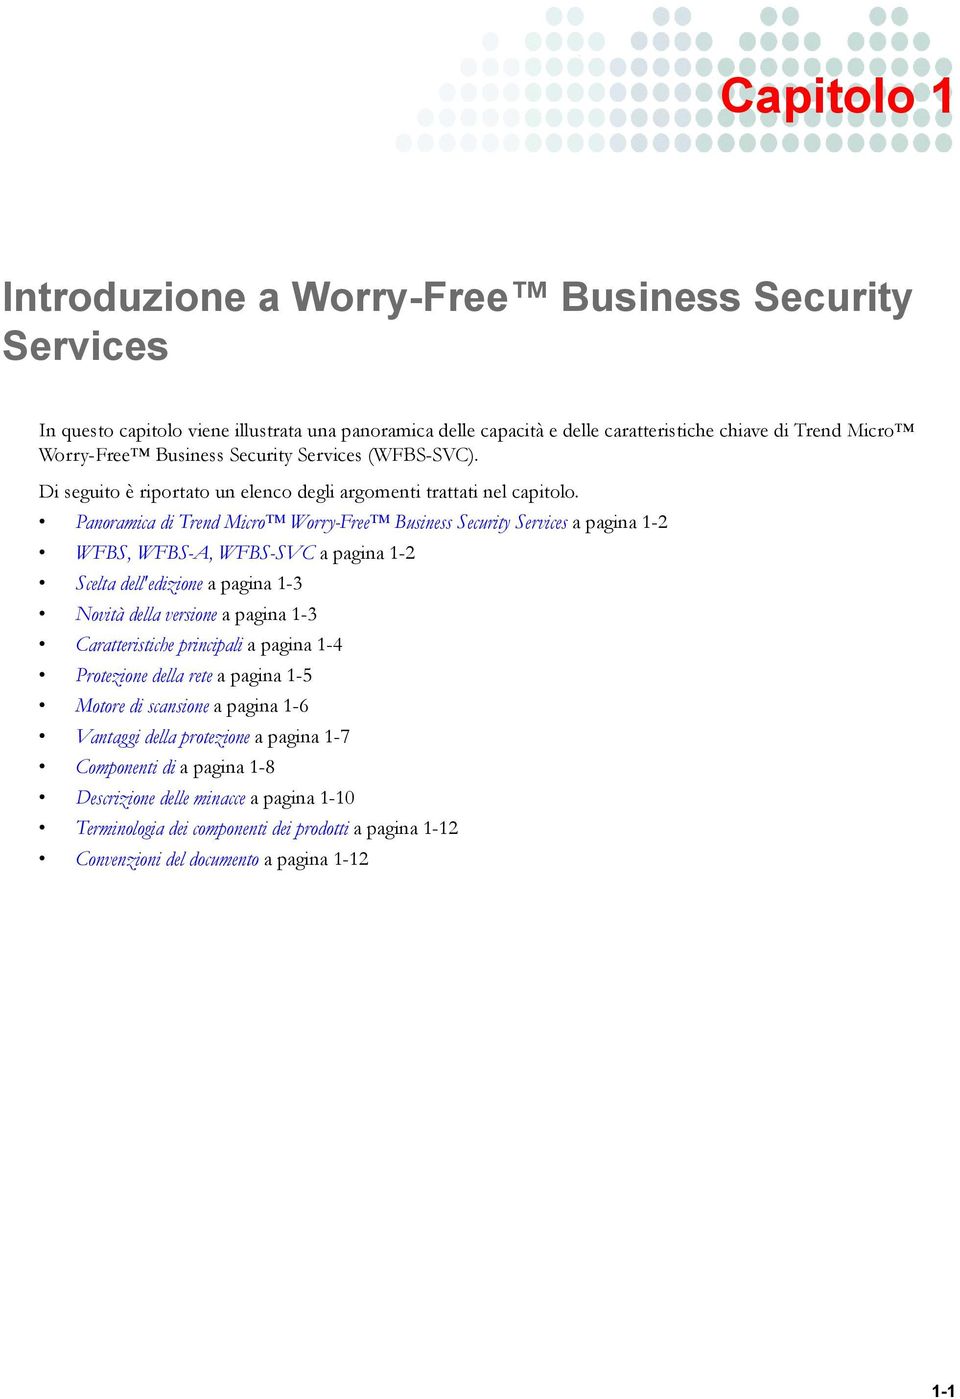 Panoramica di Trend Micro Worry-Free Business Security Services a pagina 1-2 WFBS, WFBS-A, WFBS-SVC a pagina 1-2 Scelta dell'edizione a pagina 1-3 Novità della versione a pagina 1-3 Caratteristiche